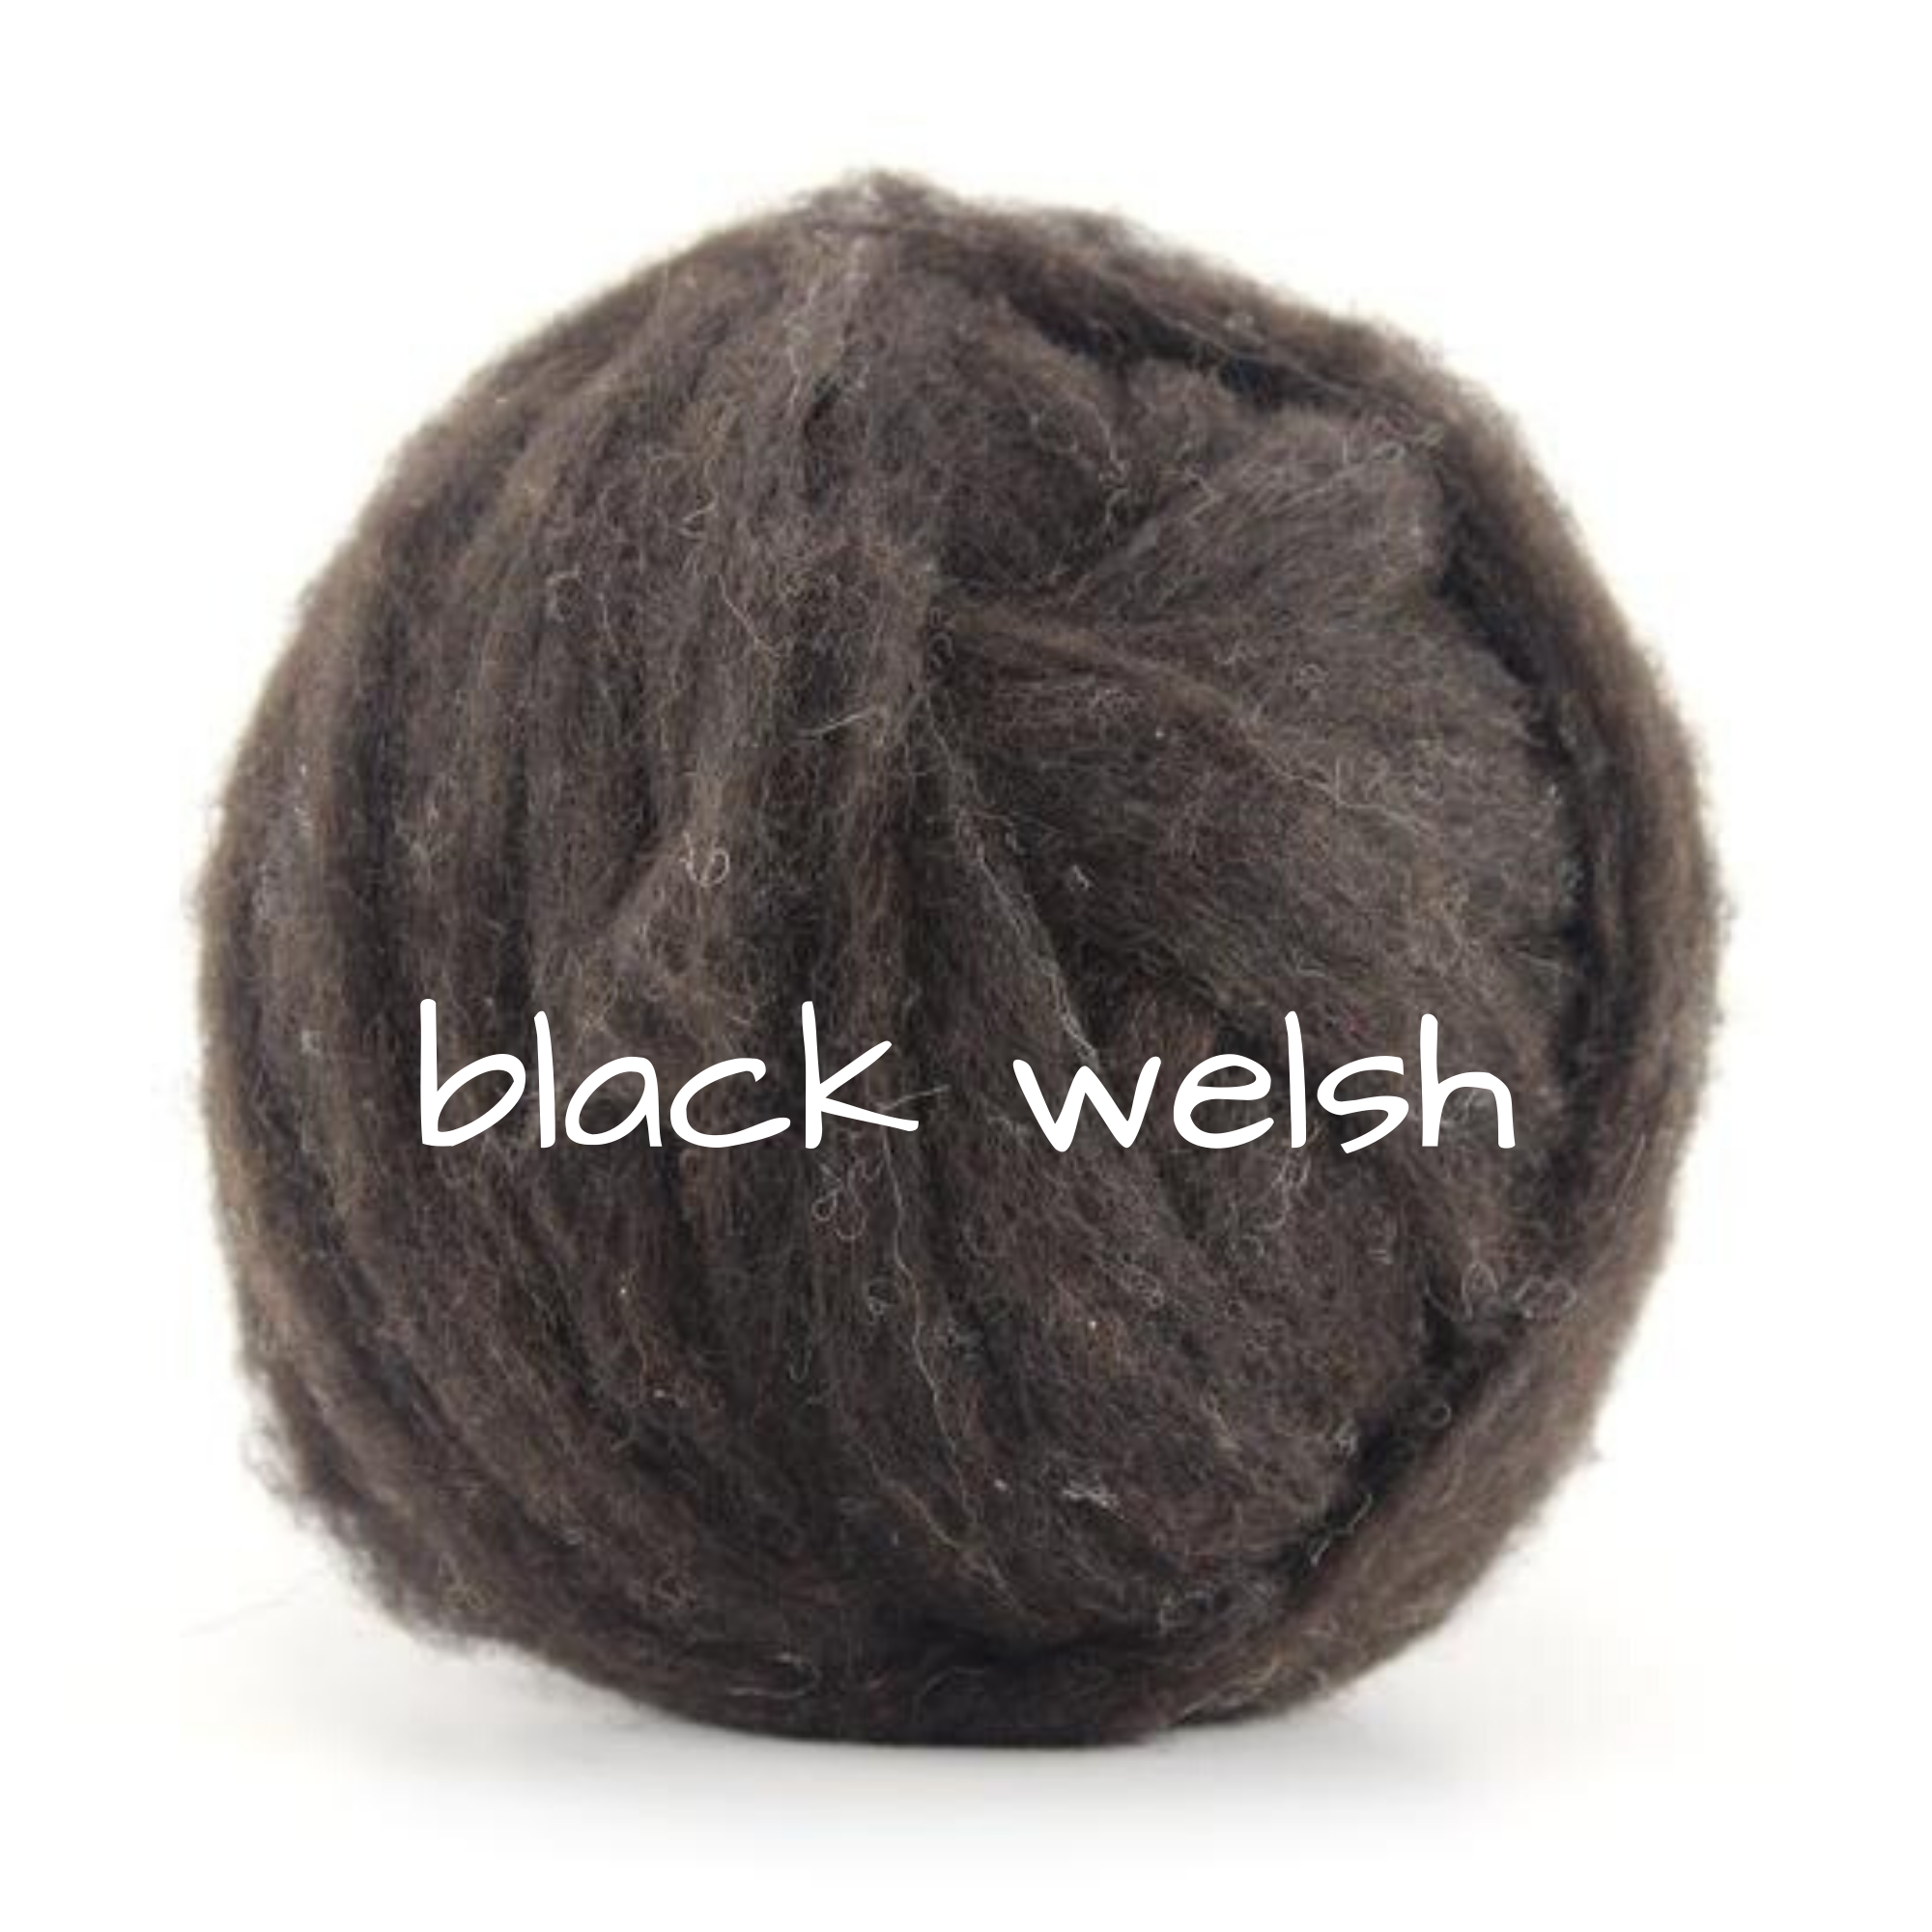 Carded - Black Welsh Slivers